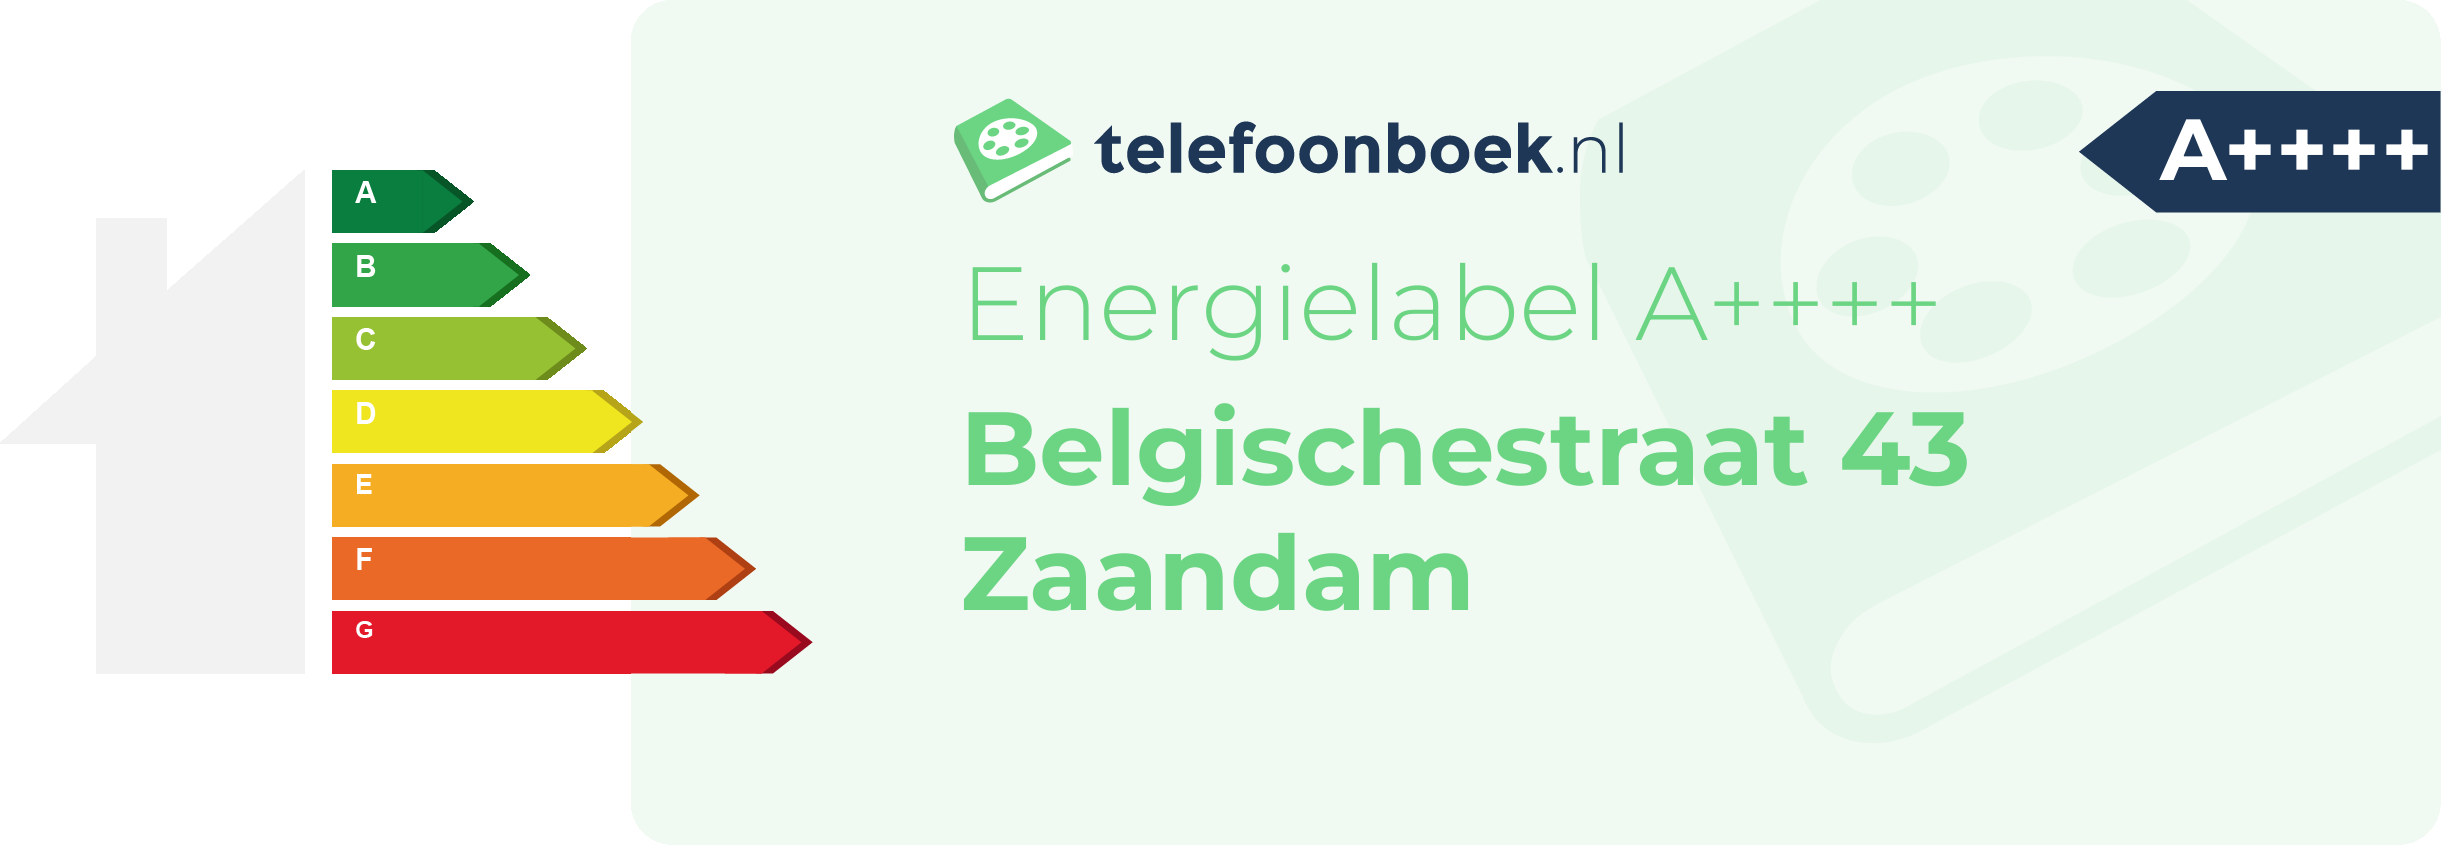 Energielabel Belgischestraat 43 Zaandam